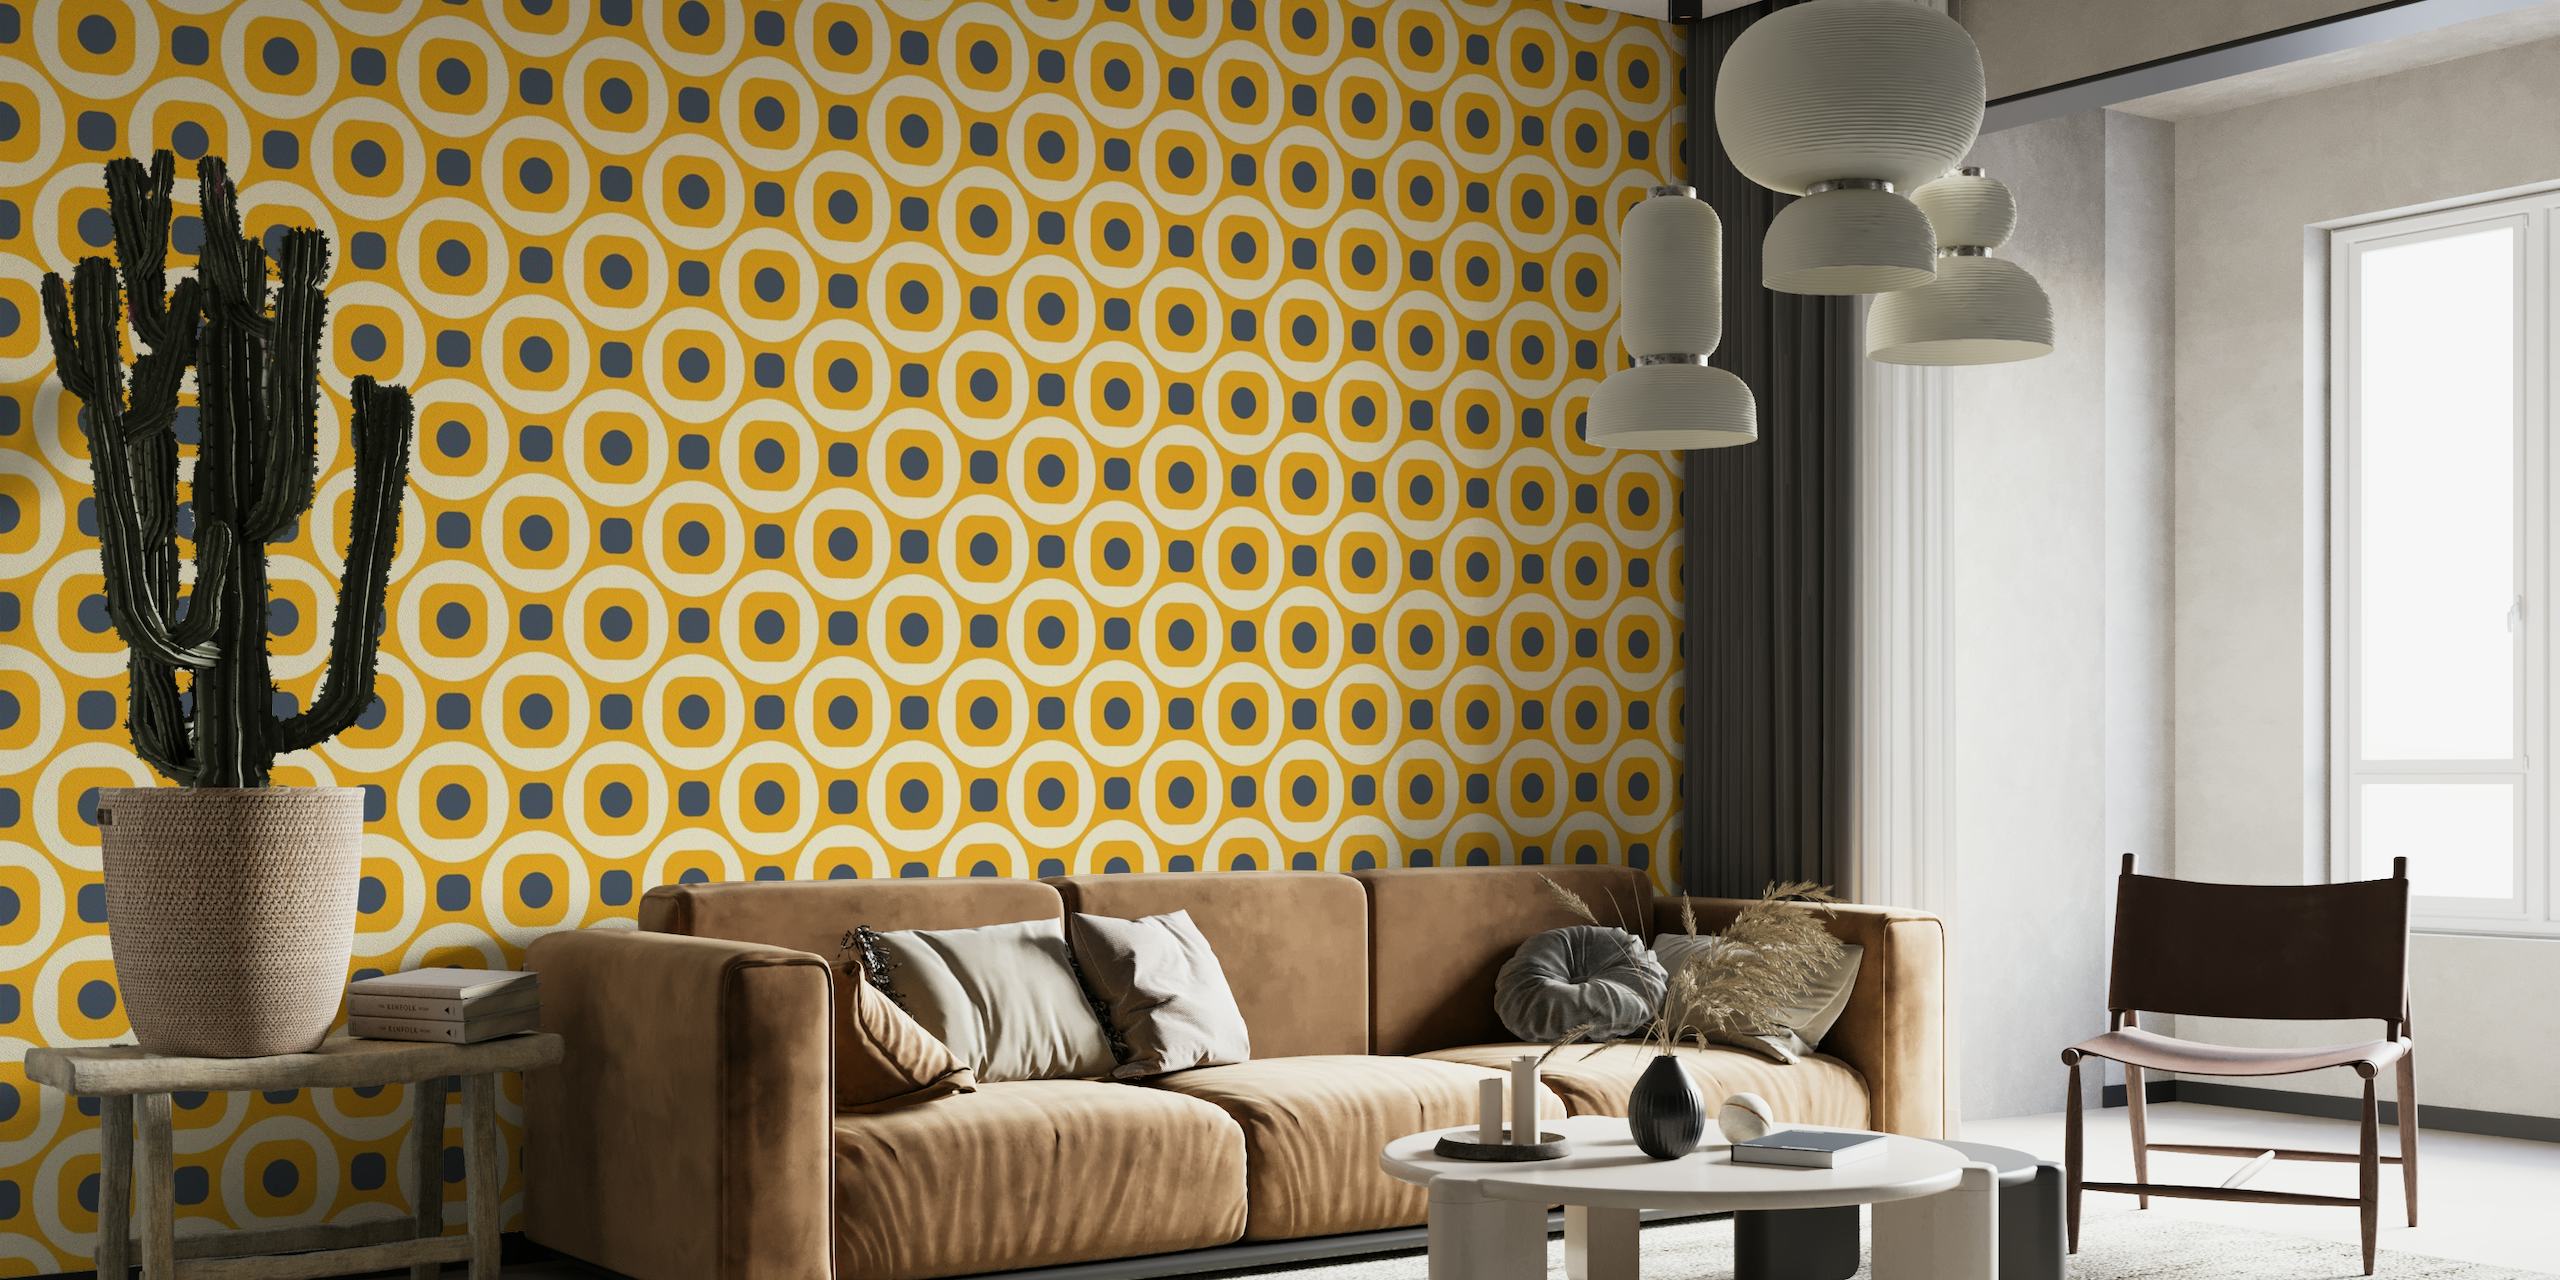 2522 J - retro geometric pattern, yellow behang